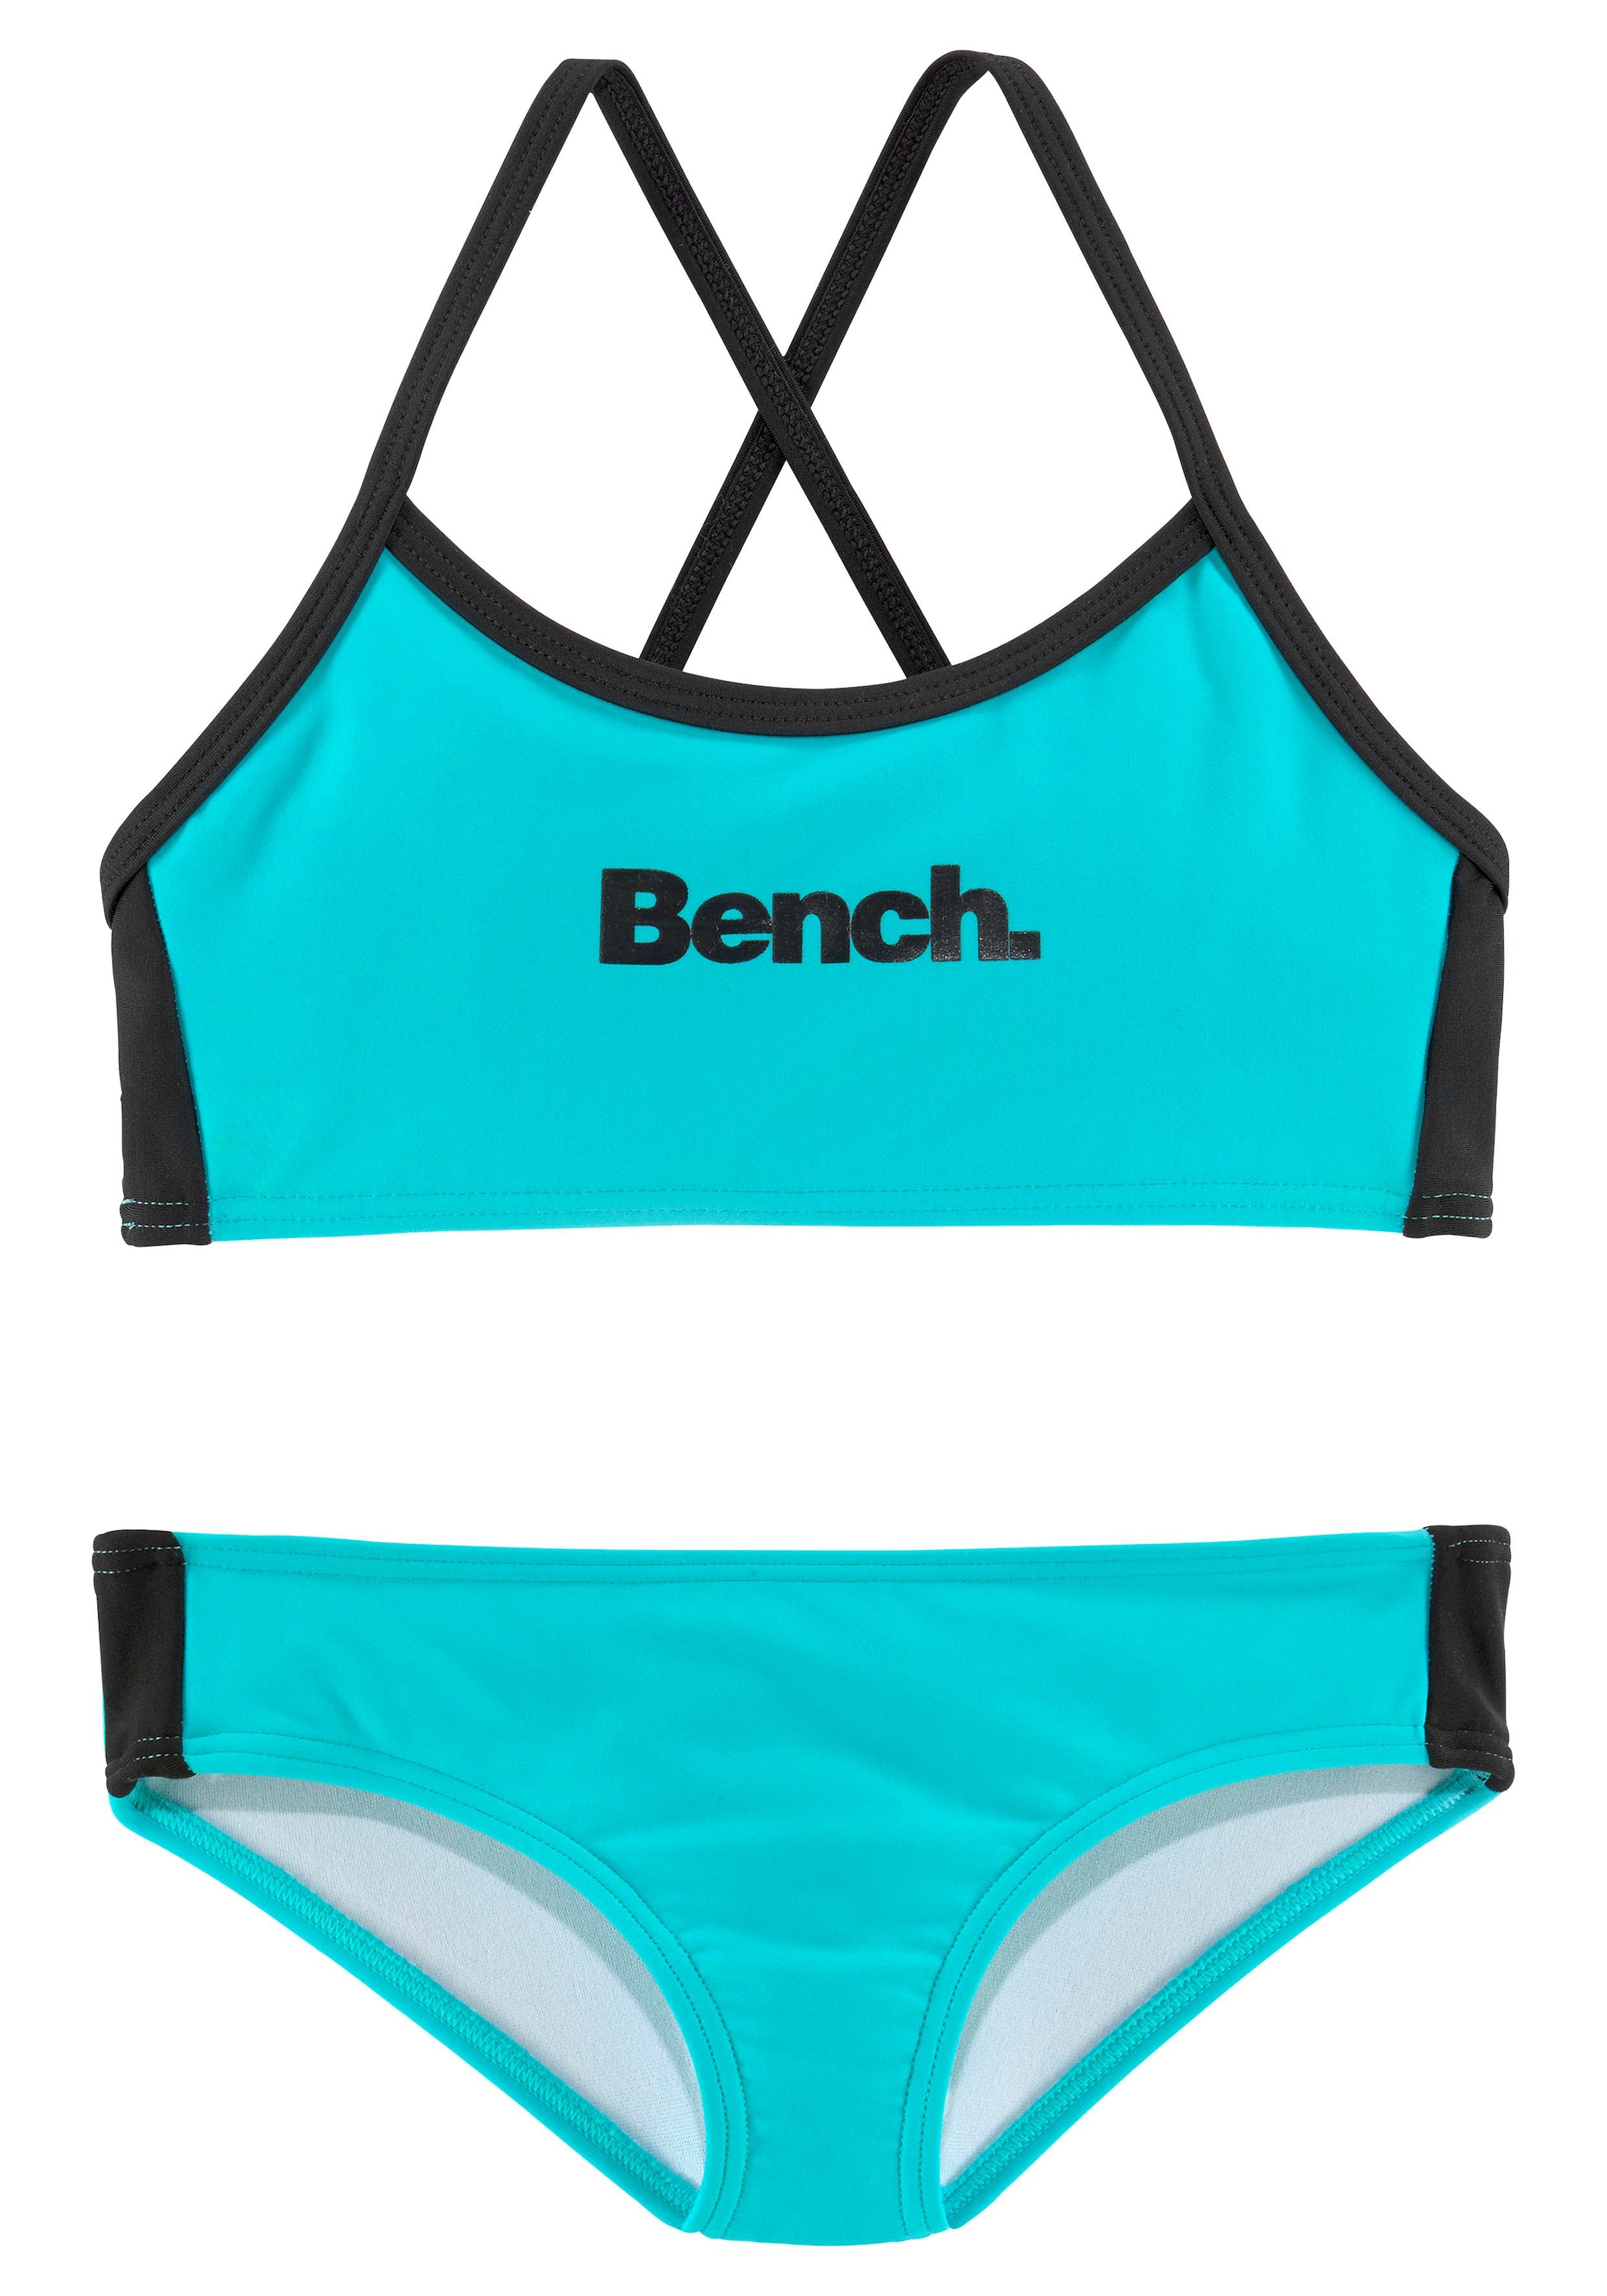 Bench. Bustier-Bikini mit online BAUR regulierbaren kaufen Trägern 